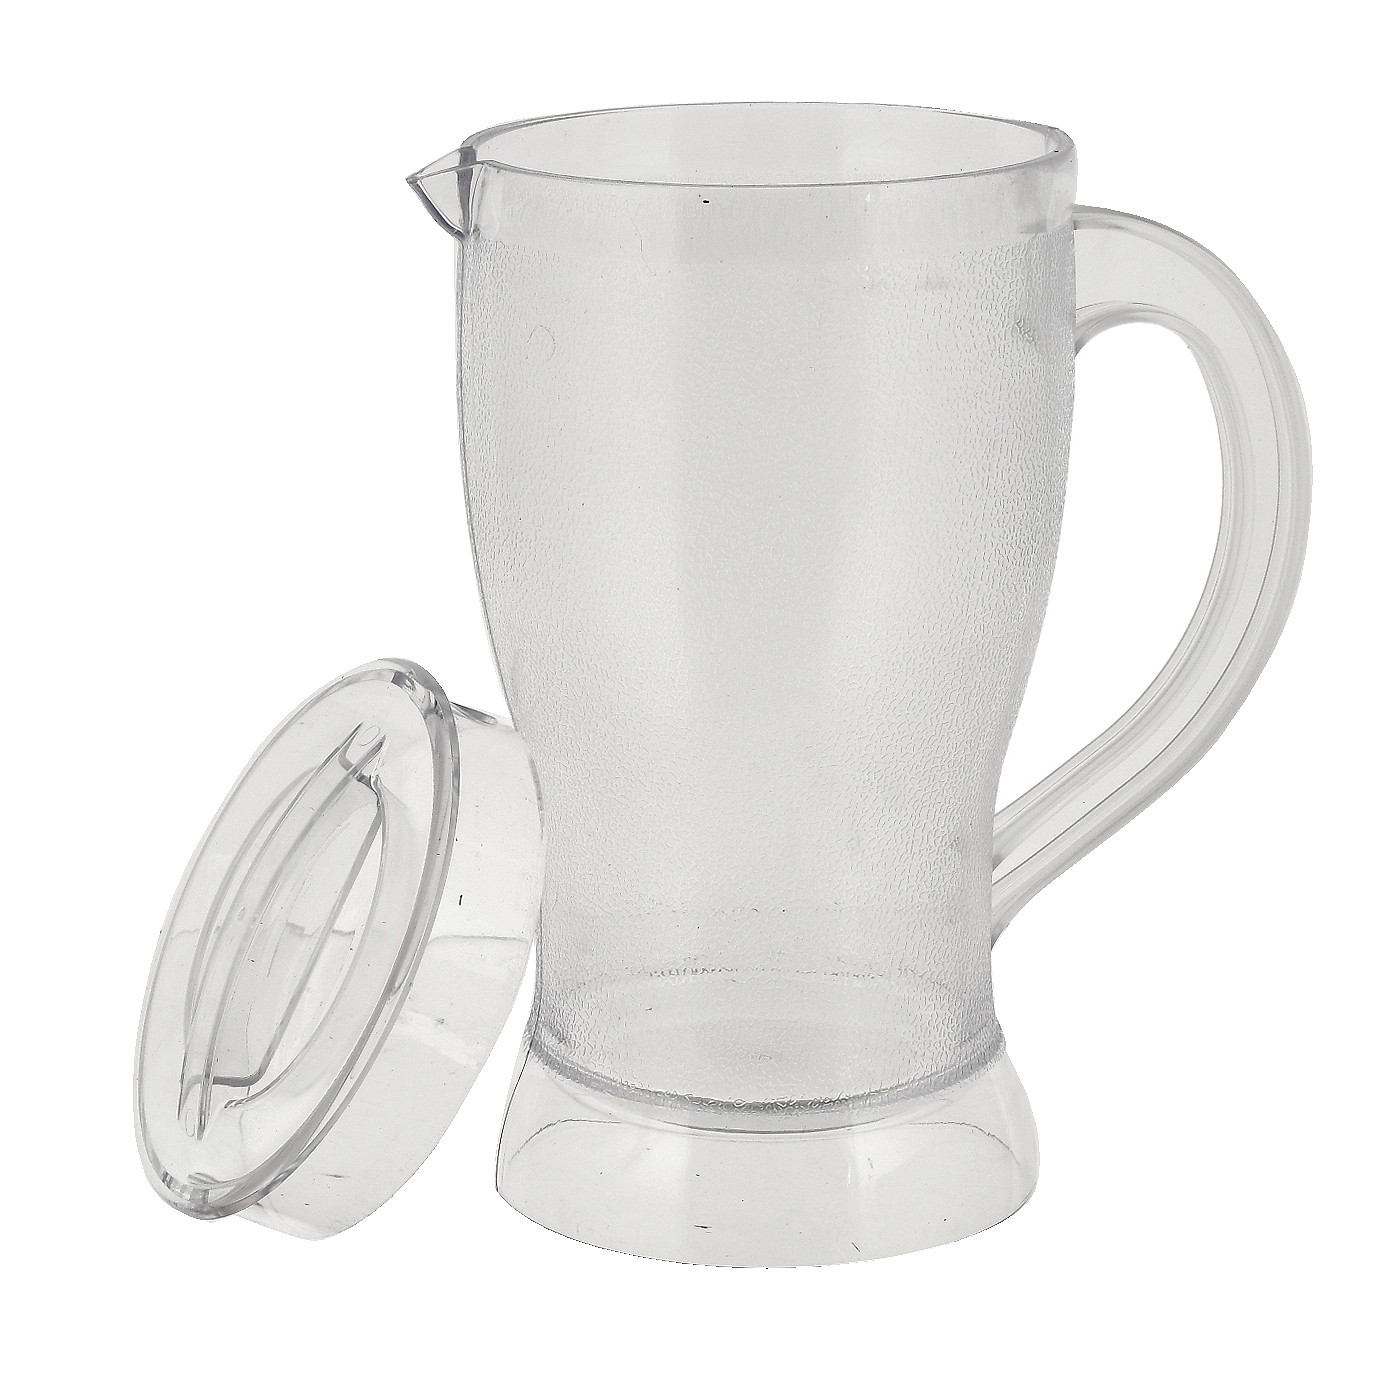 Kuber Industries Unbreakable Plastic Tableware Serving Lemon Set, Water jug with 6 Water Glass,(Set of 7 Pcs)